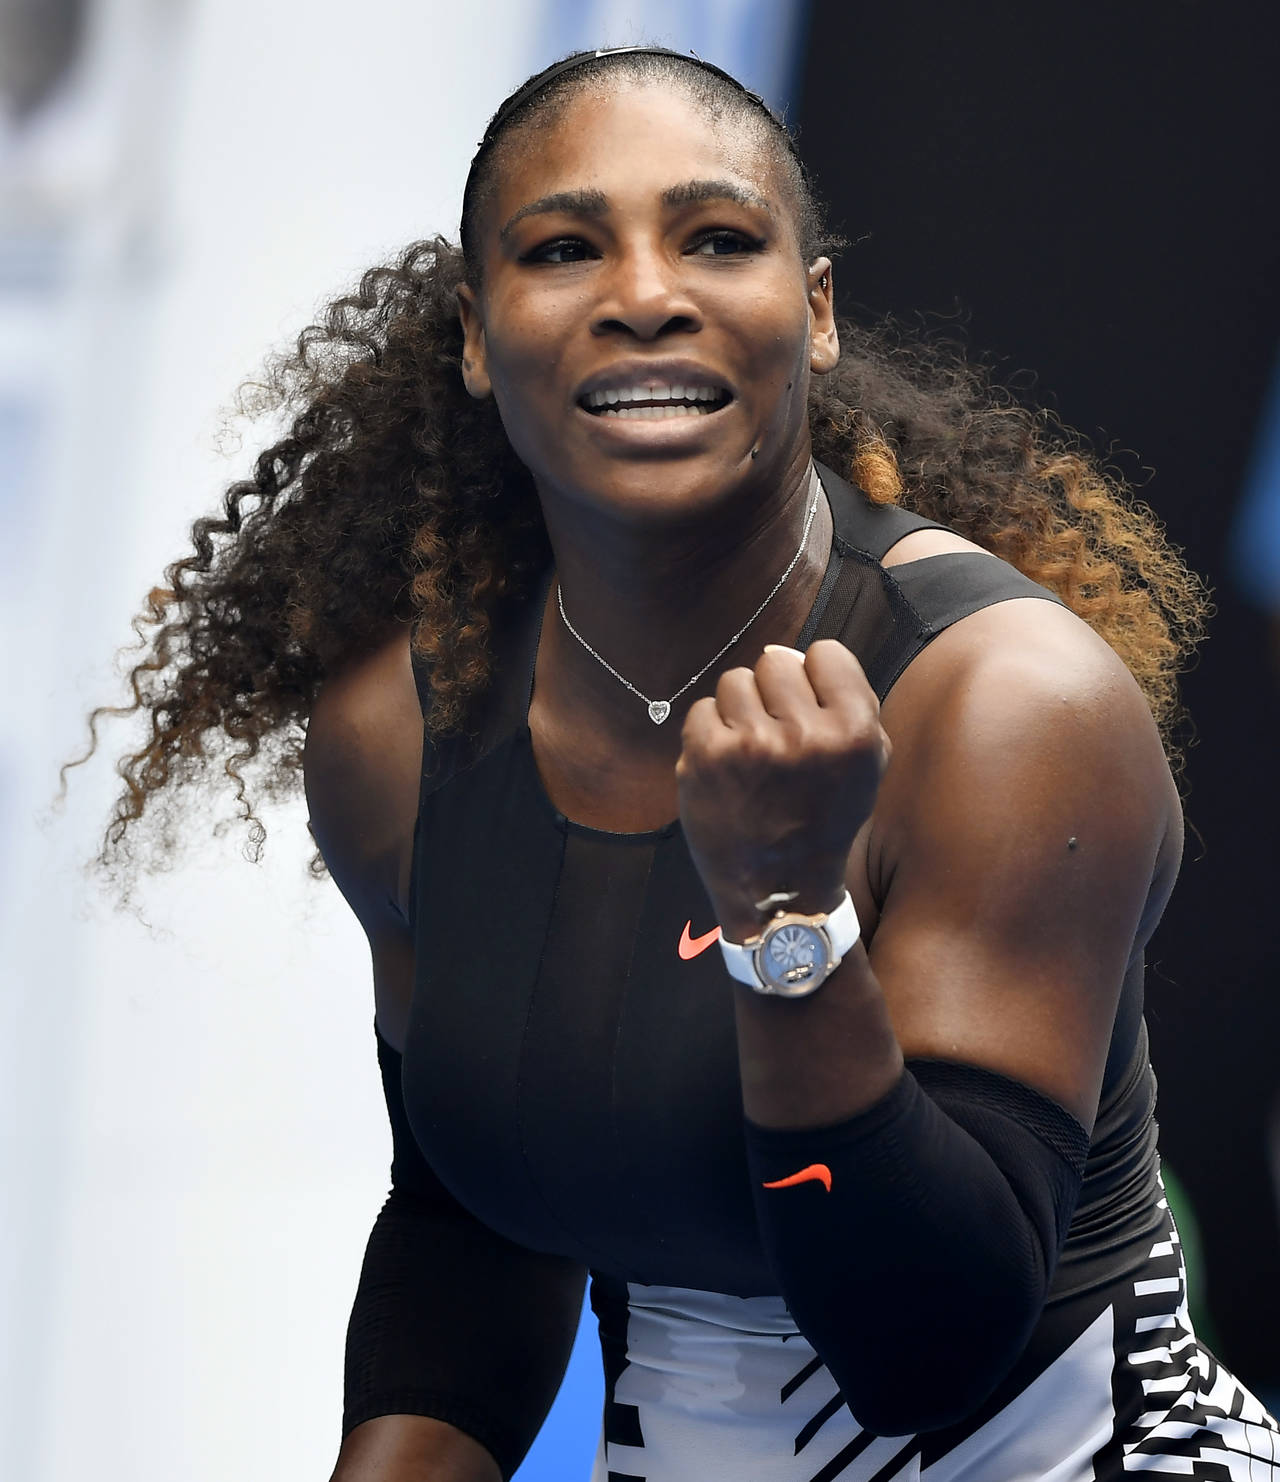 La estadounidense Serena Williams salvó su primer compromiso en el Abierto de Australia al derrotar a la suiza Belinda Bencic. Serena supera complicado debut